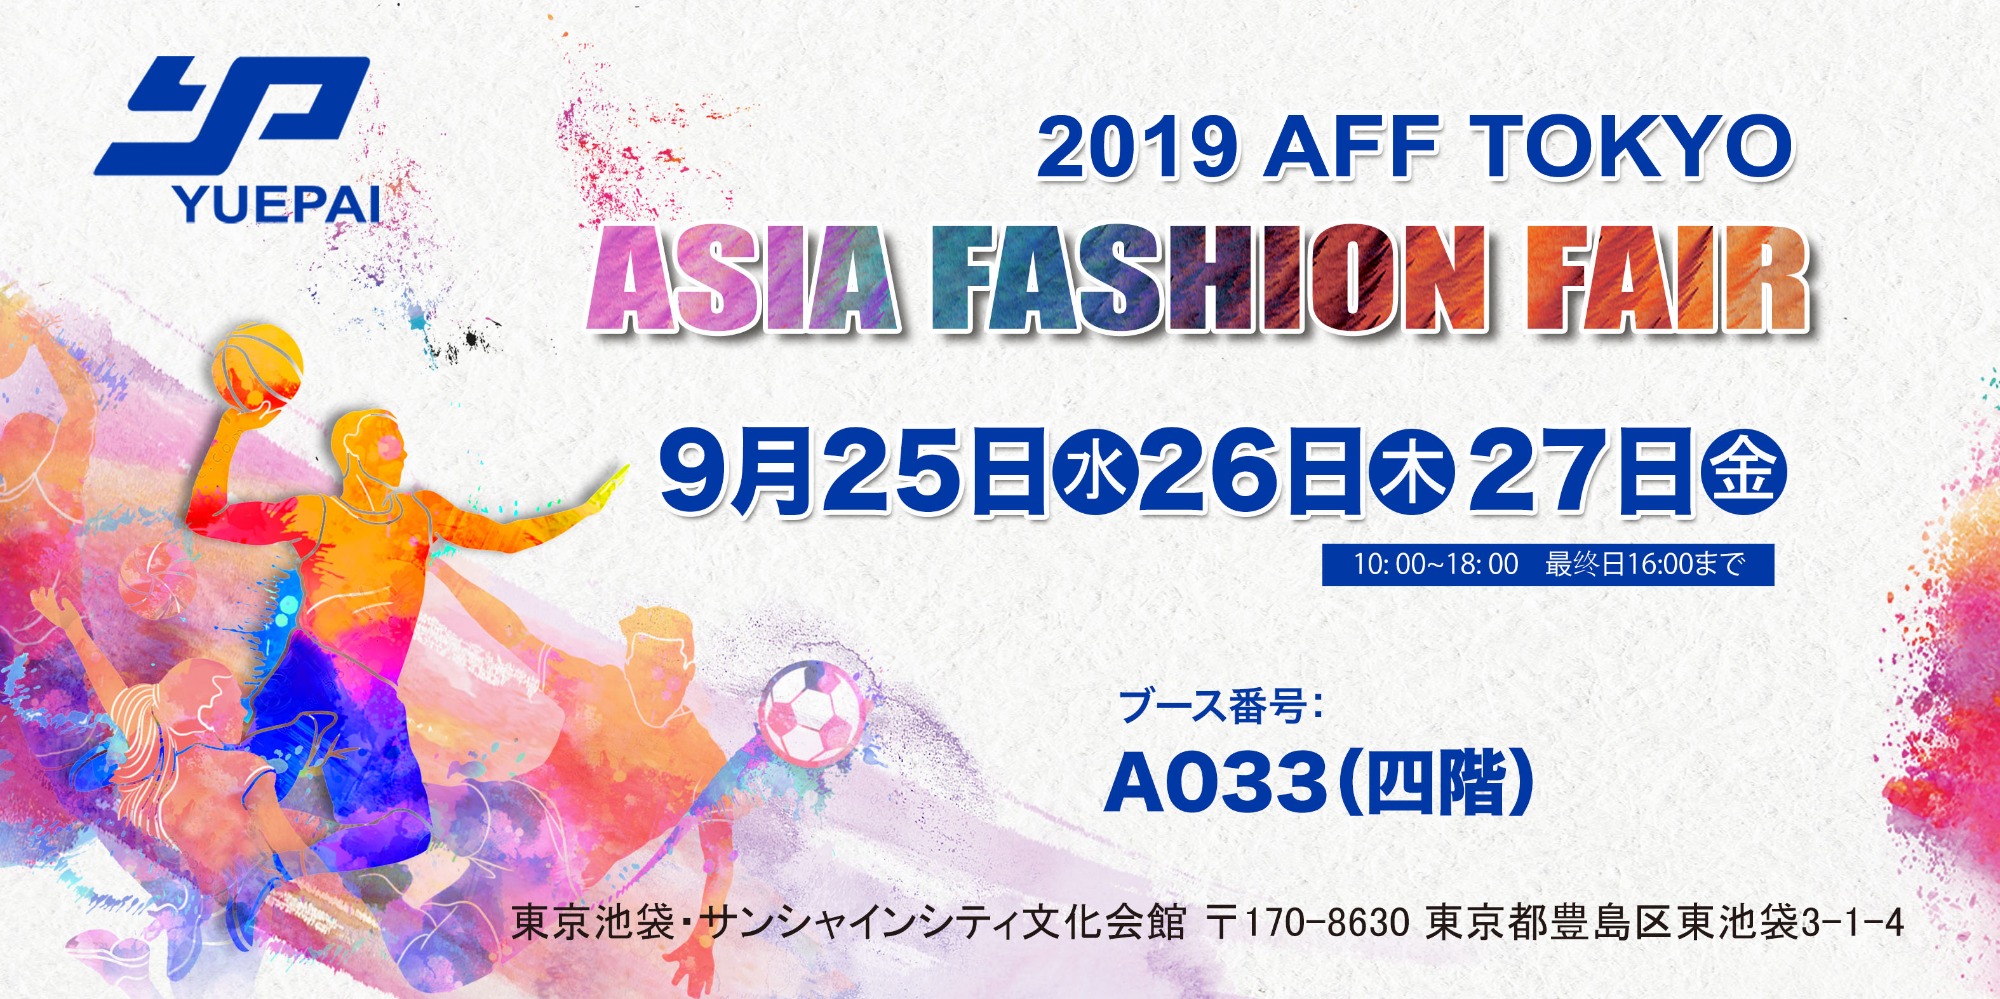 2019 AFF TOKYO ASIA FASHION FAIR